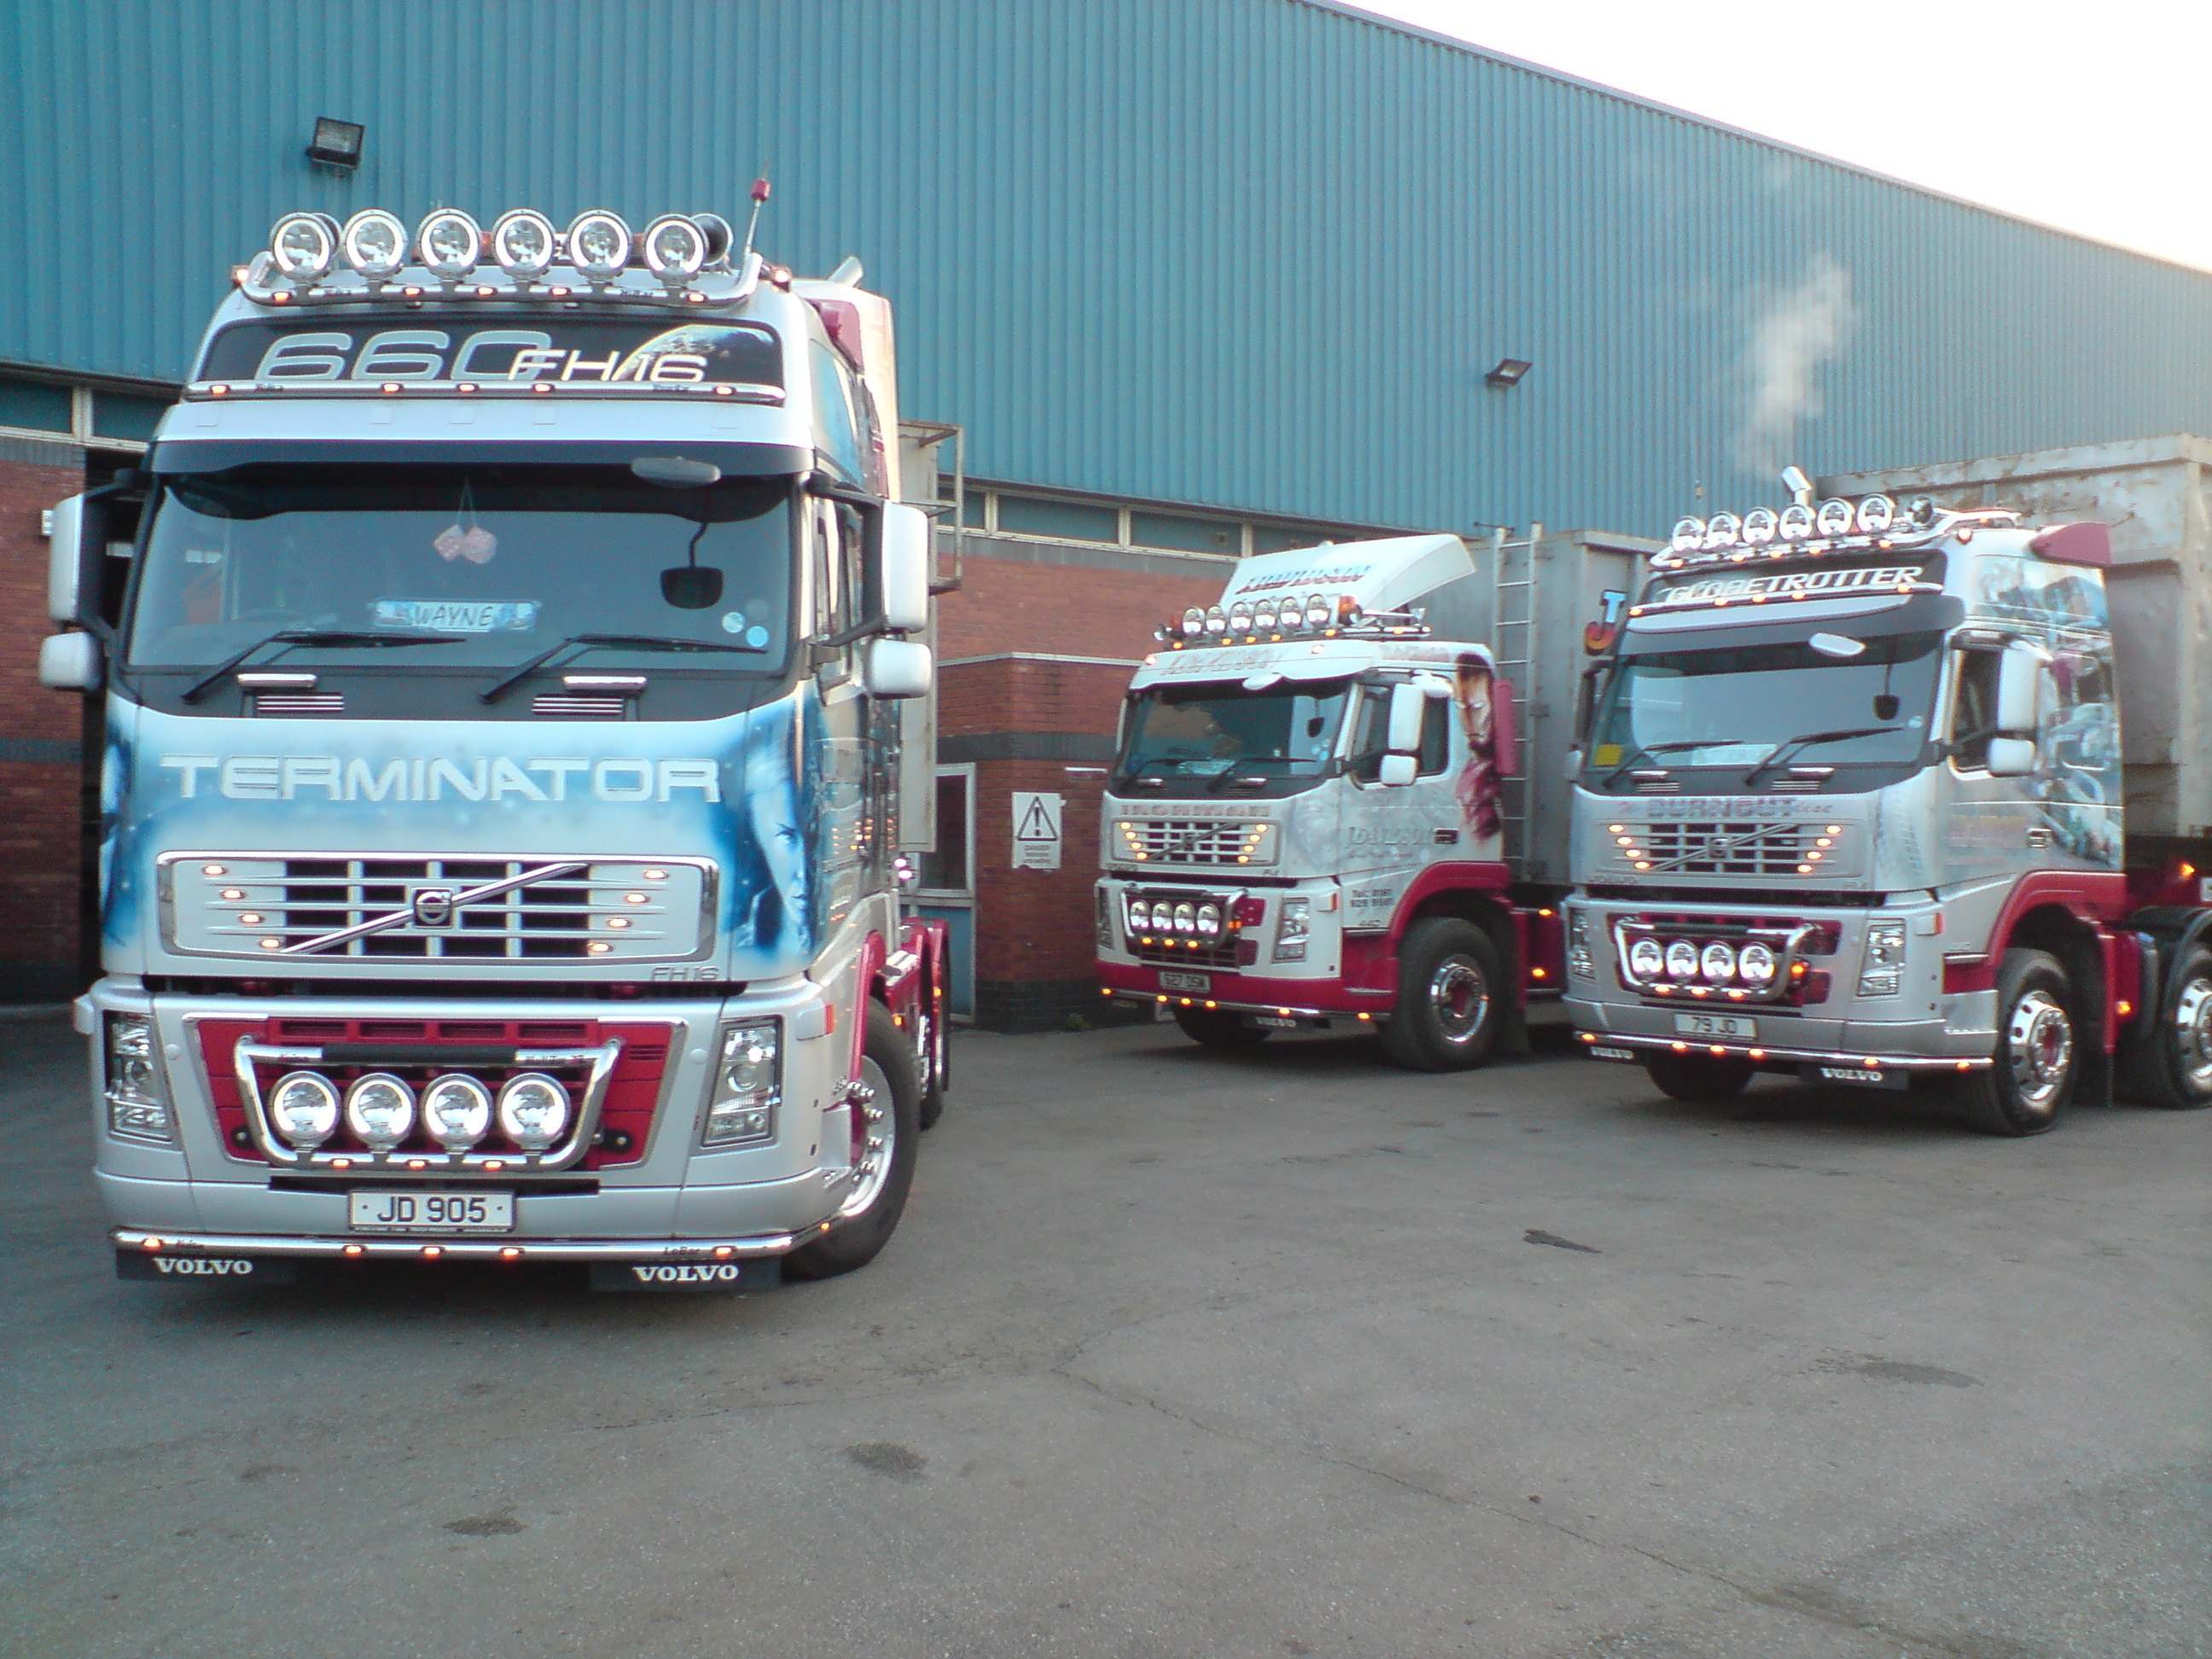 Davidson's trucks